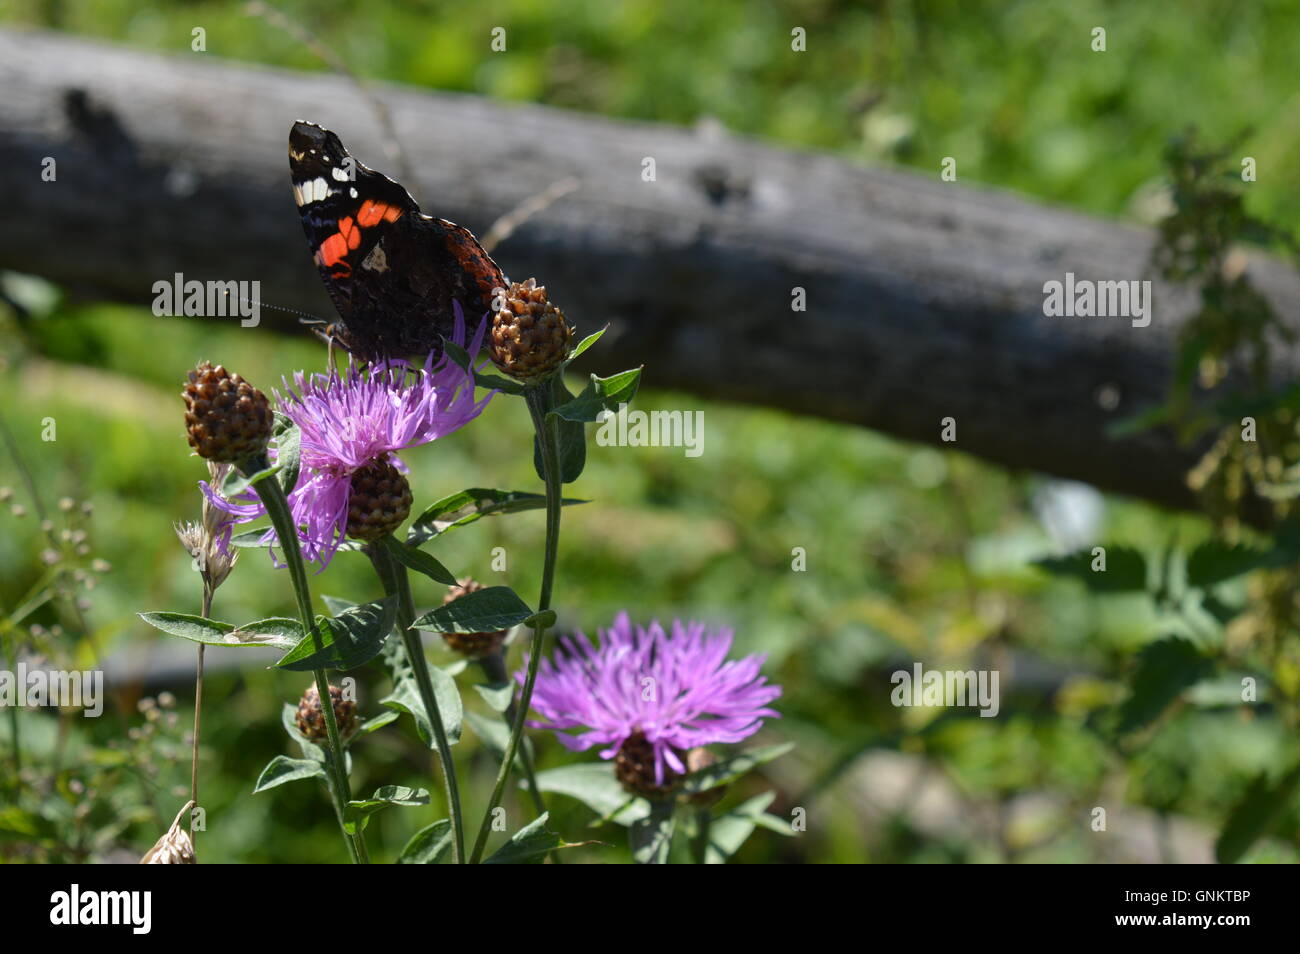 Close up of a black papillon sur une fleur Banque D'Images